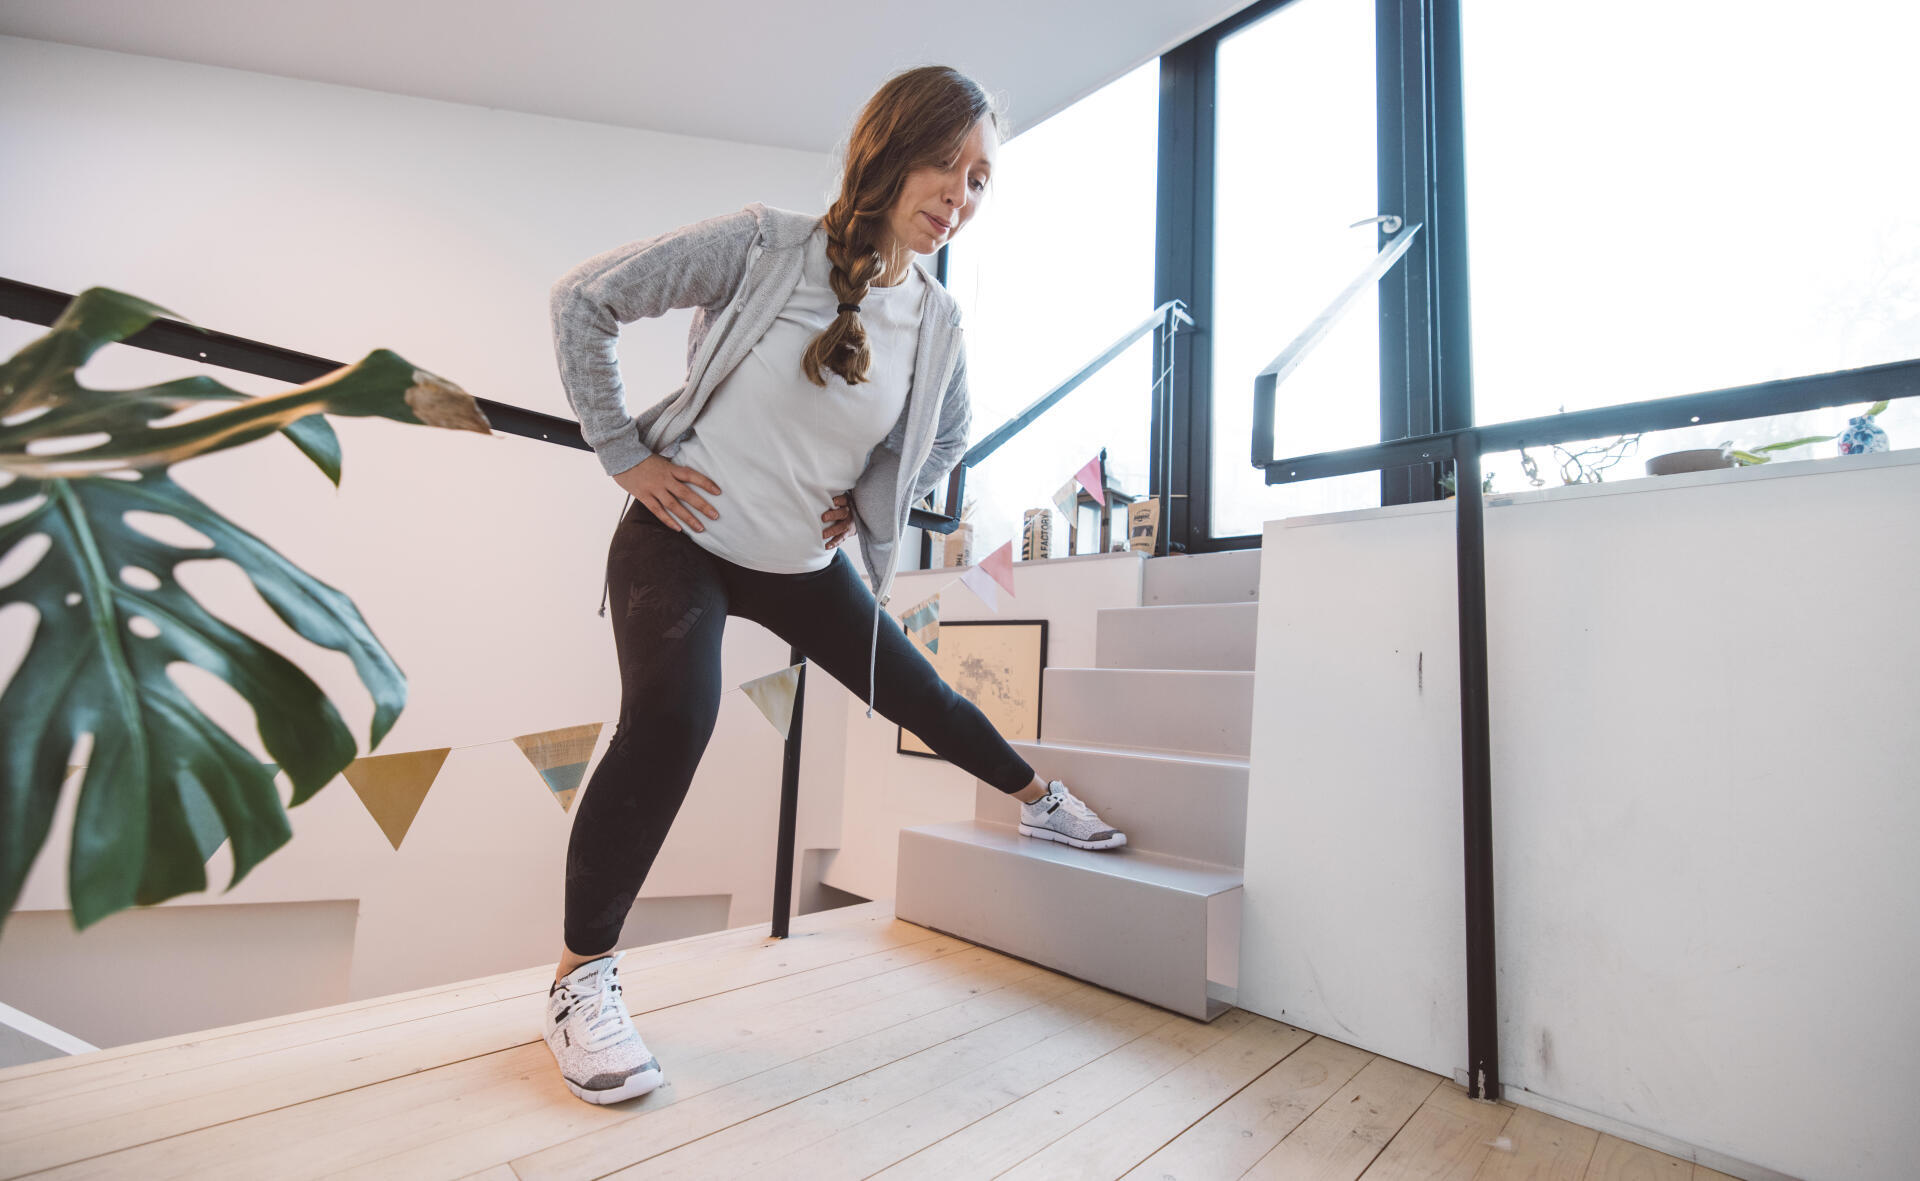 Monter ses escaliers - Les 10 bonnes façons de faire du sport à la maison -  Elle